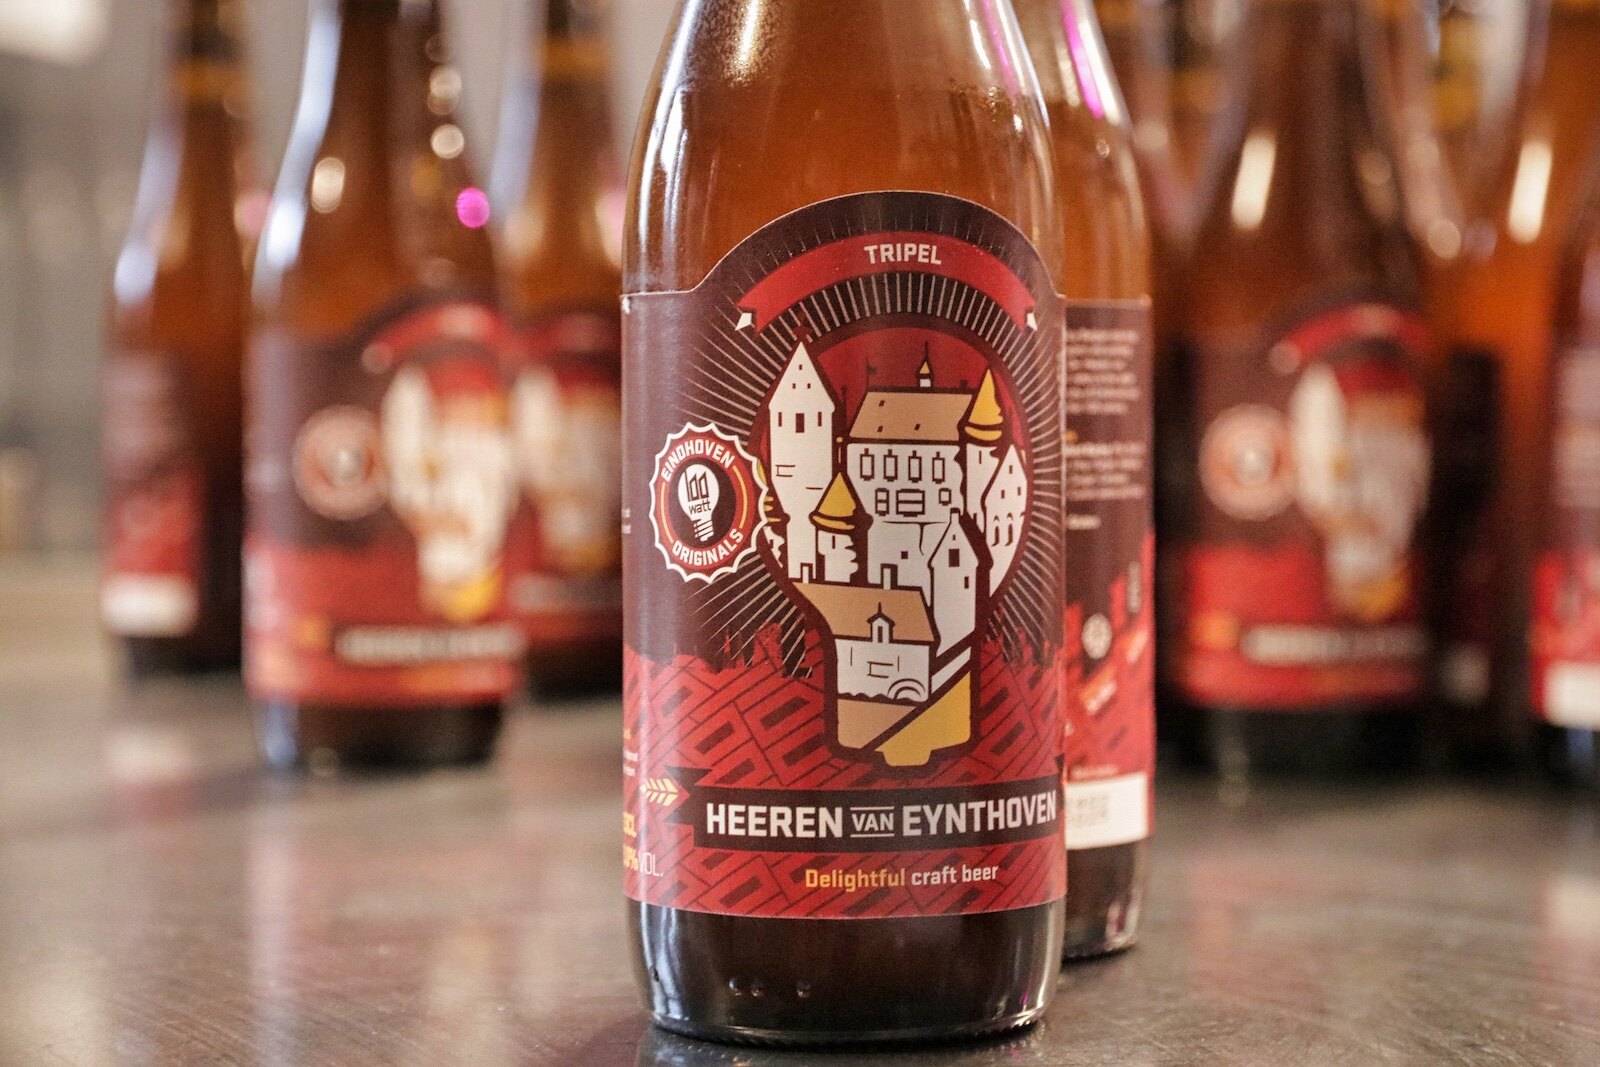 Heeren van Eindhoven is a Belgian style Tripel in the series 'Eindhoven Originals' from 100 Watt Brewery